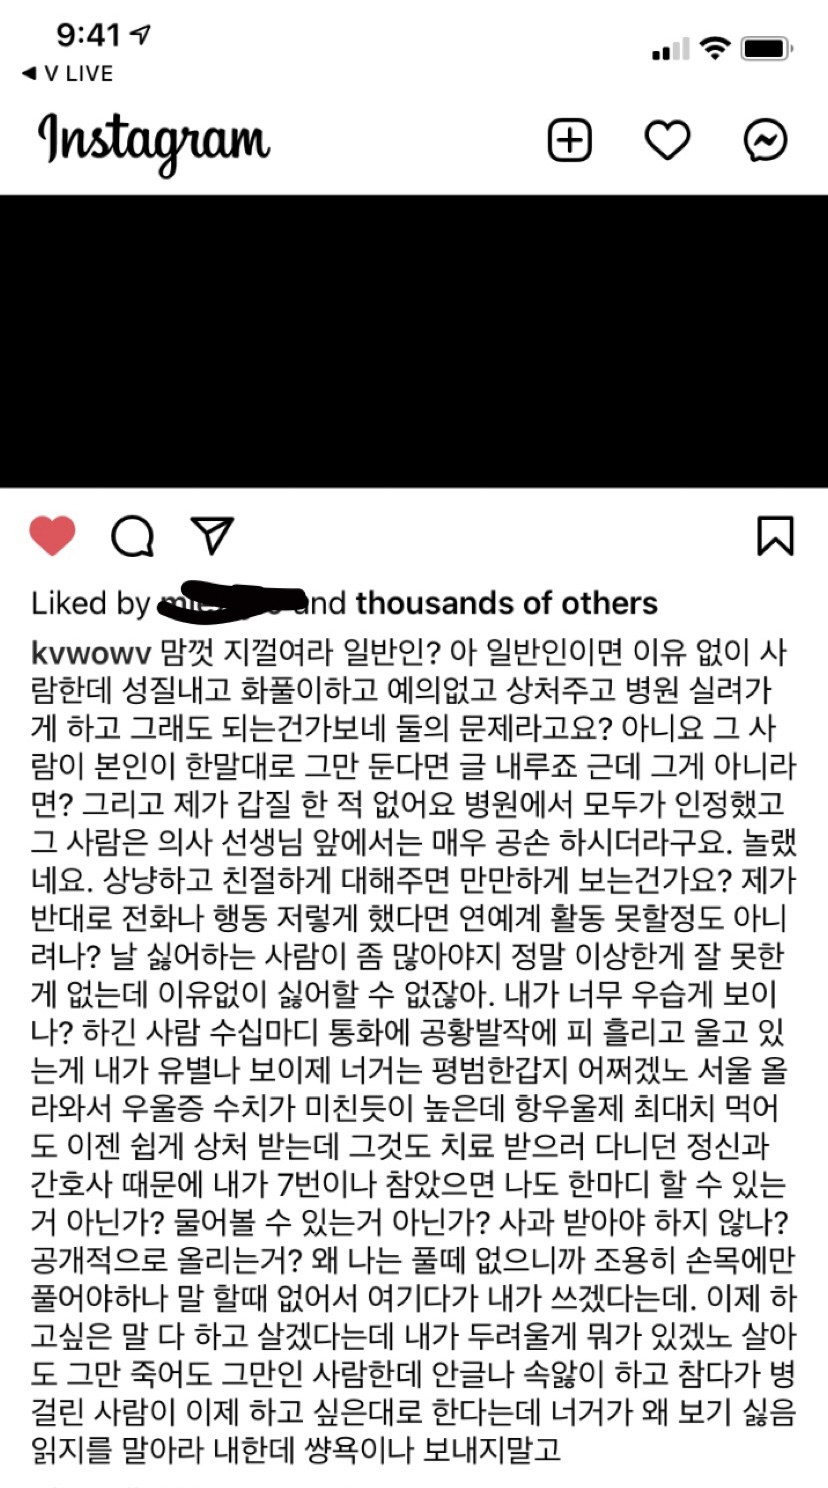 Бывшая участница AOA - Мина опубликовала еще одно сообщение в Инстаграм